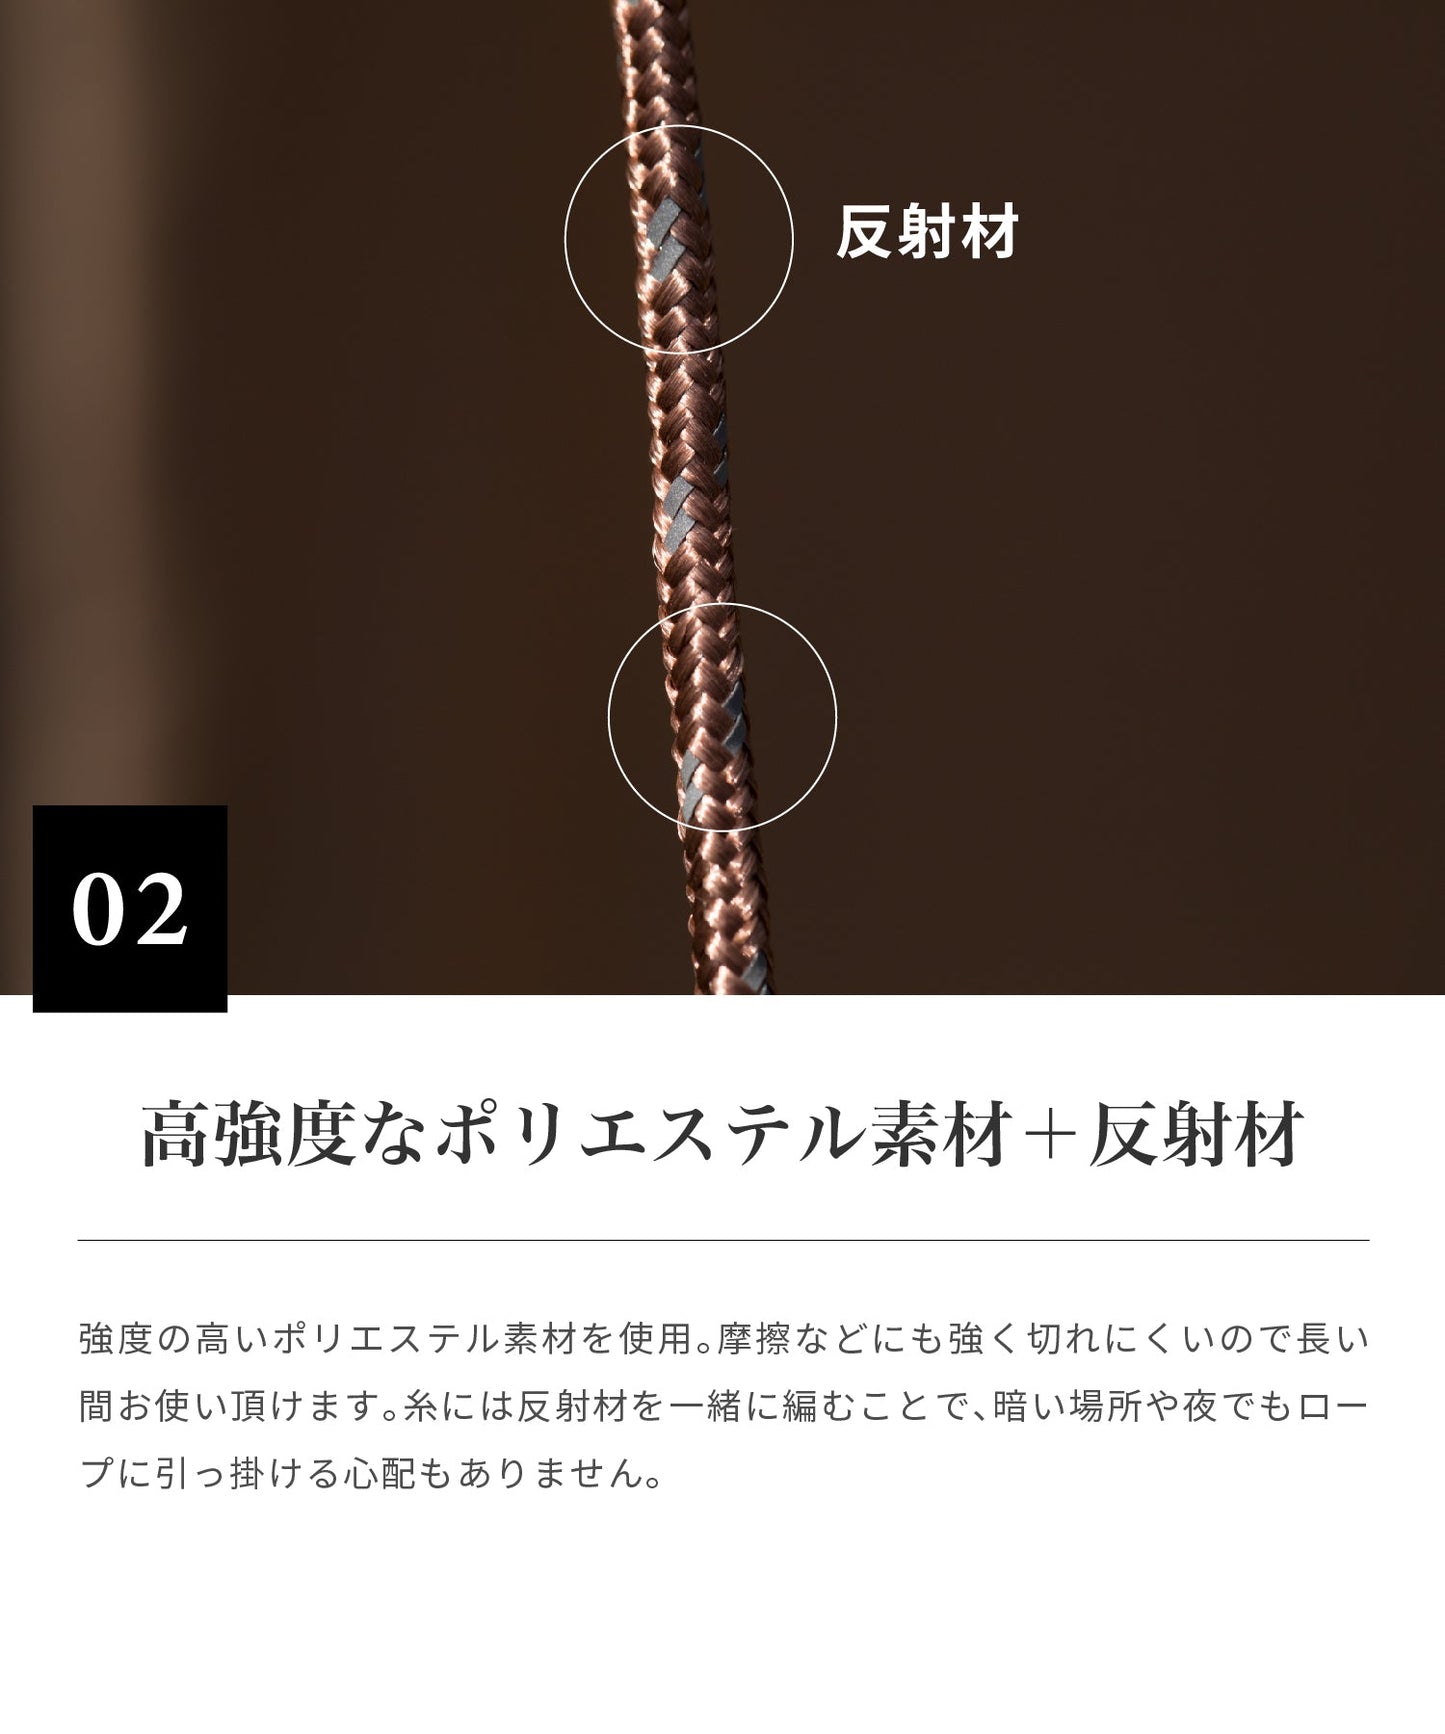 【預購】Deco de rope 營繩